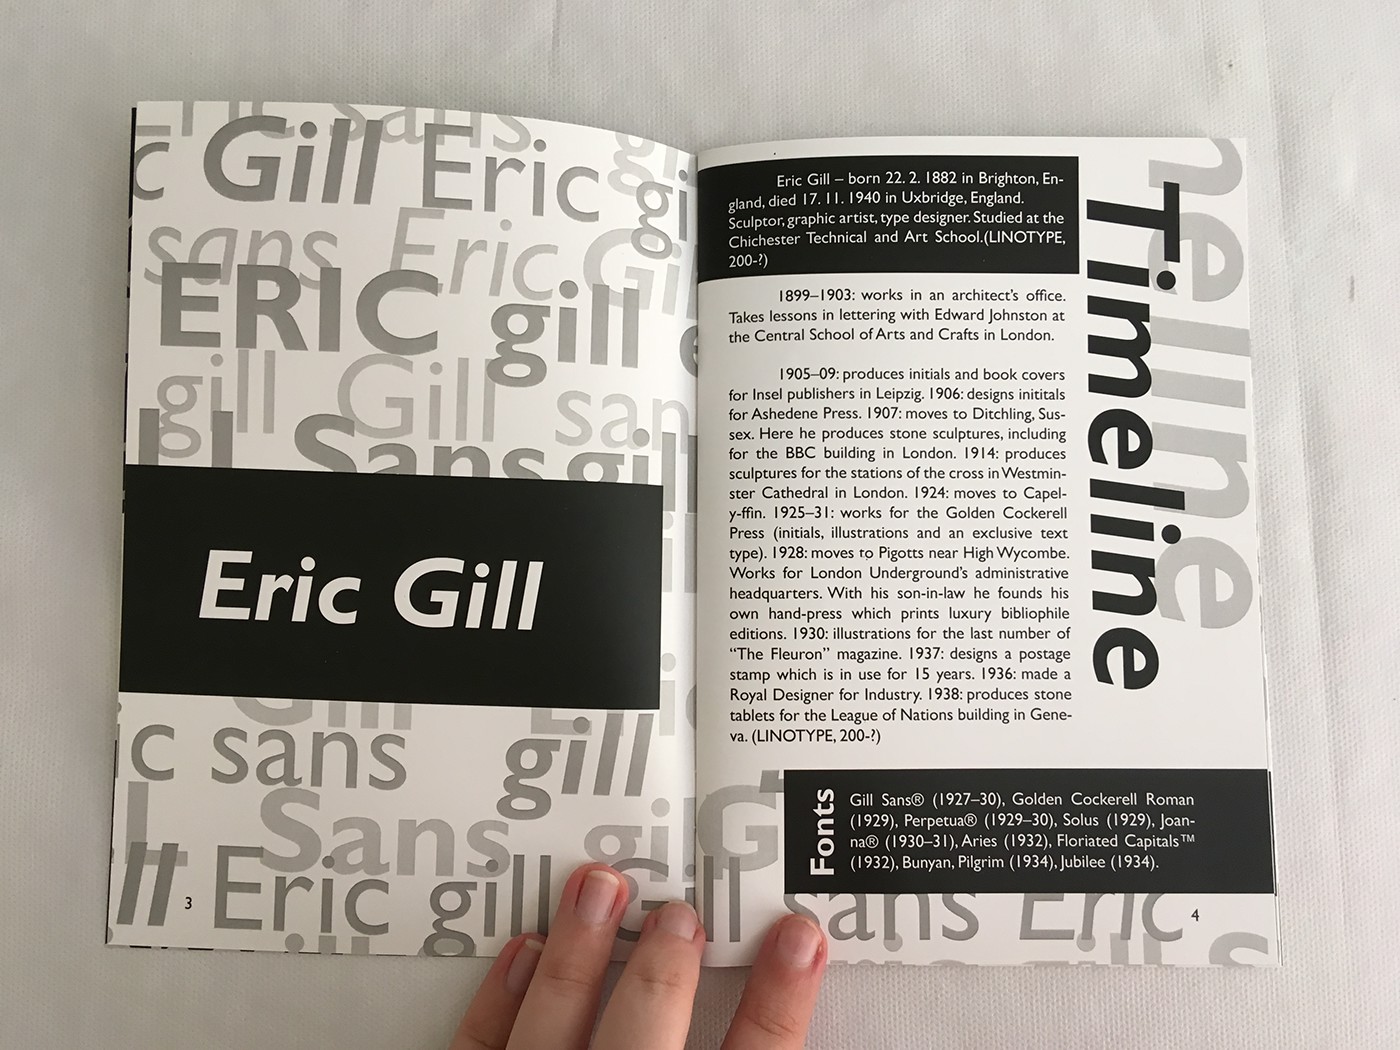 tipografia Gill Sans Livreto editorial UEMG estudante universidade p&b grayscale design